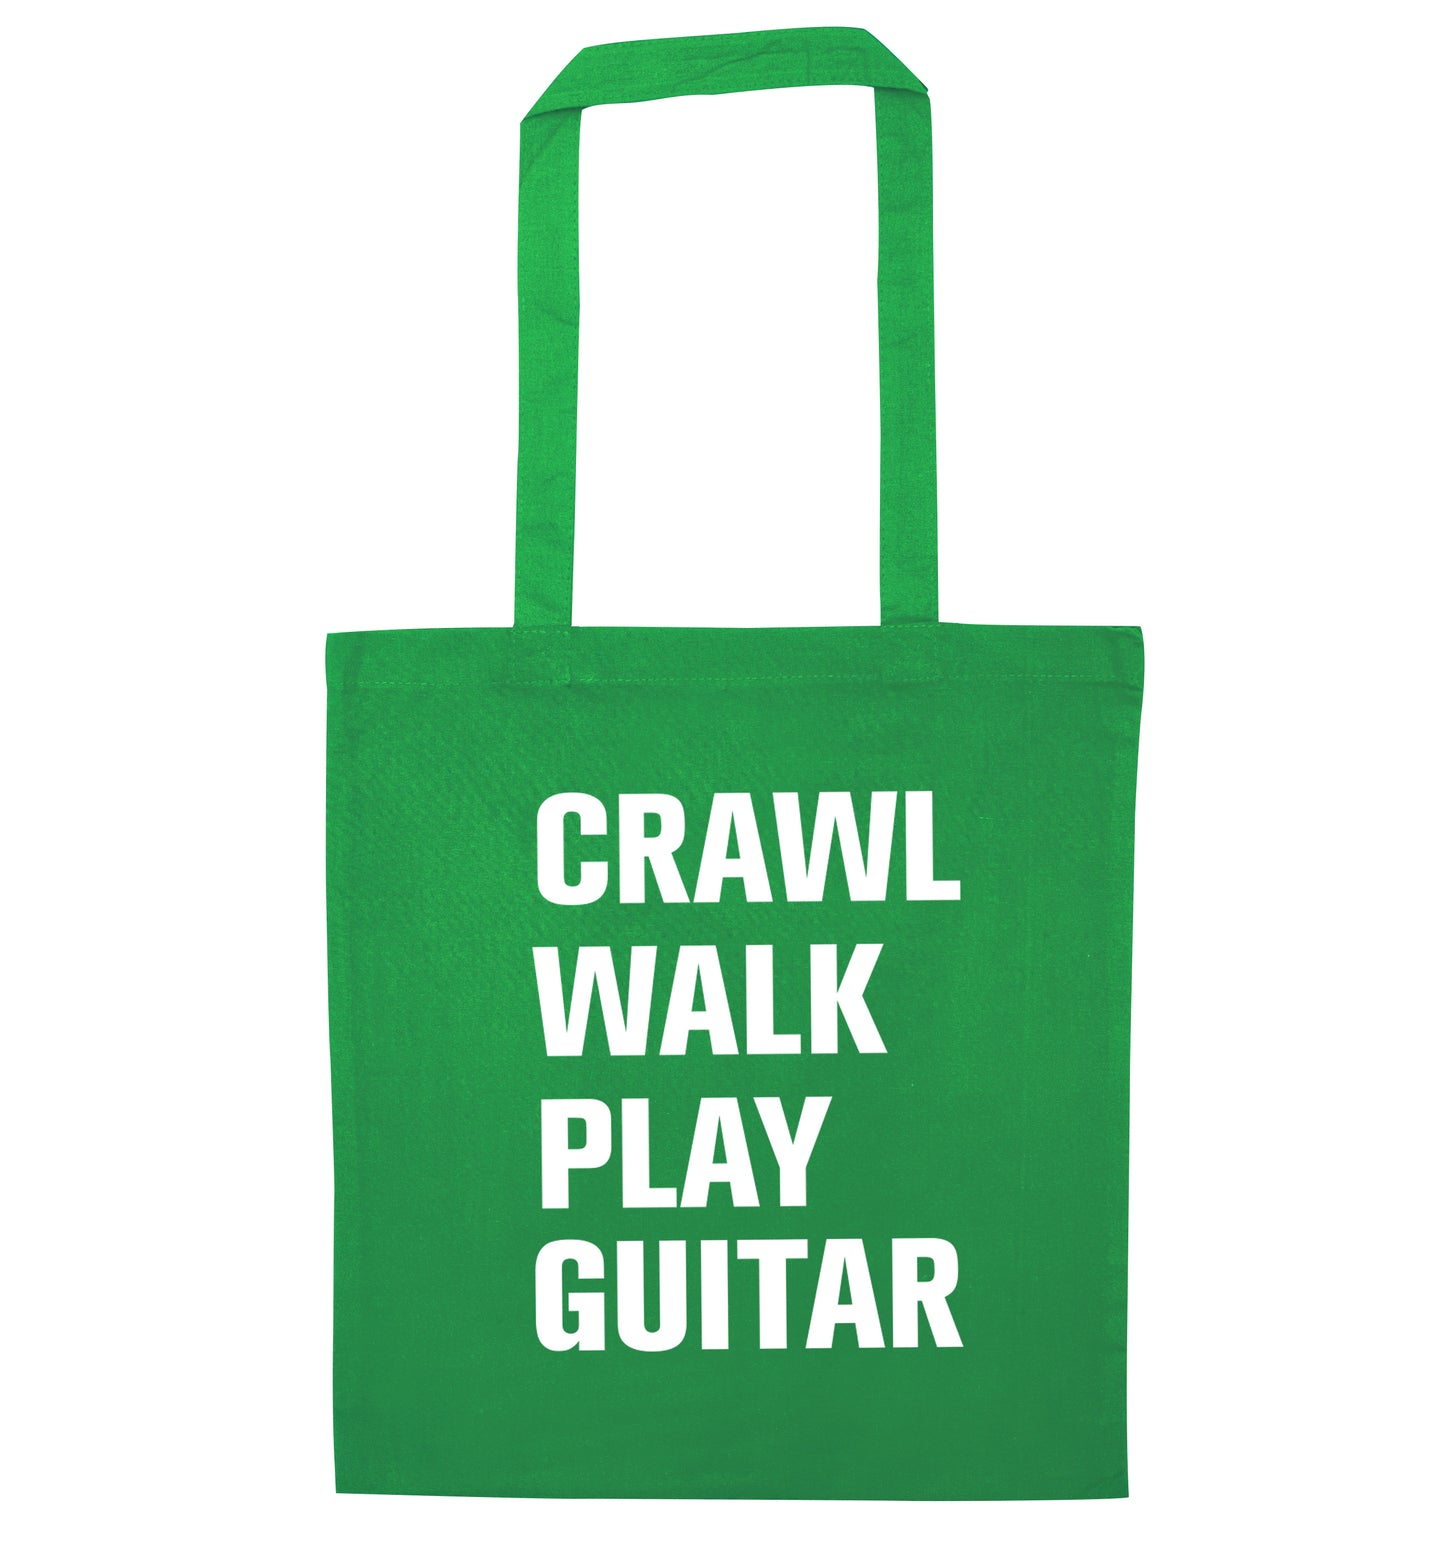 Crawl walk play guitar green tote bag